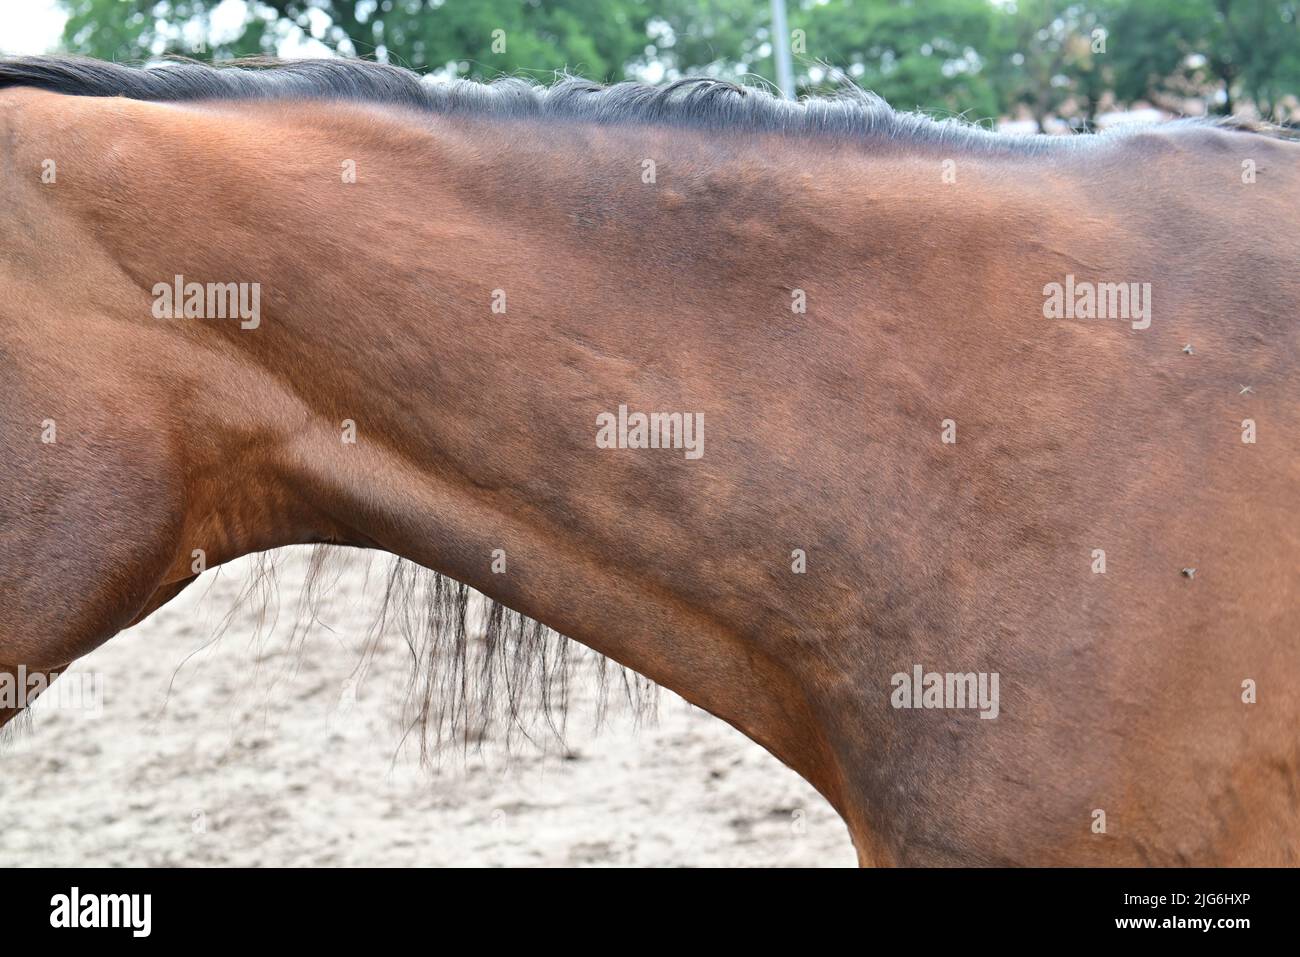 Urticaire ou roues allergiques sur le cou d'un cheval Photo Stock ...